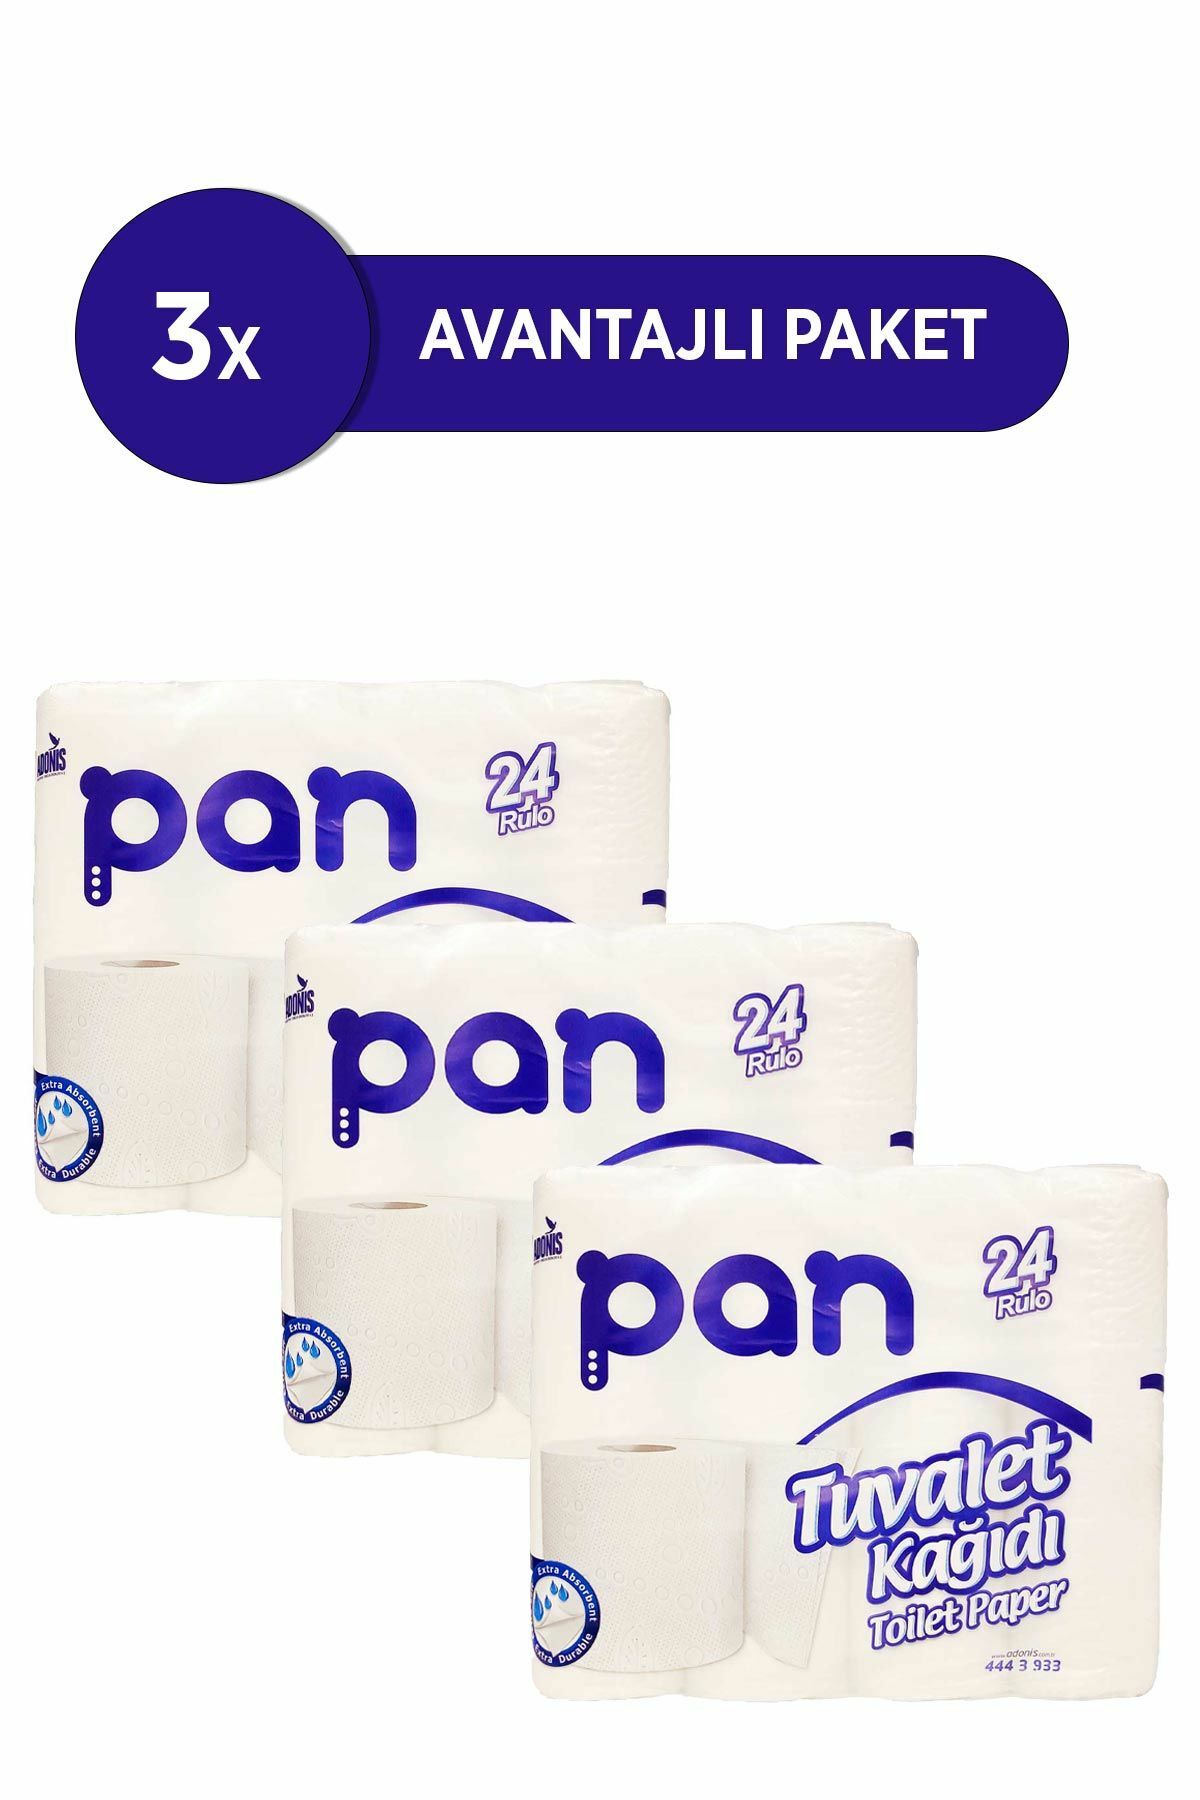 Pan Tuvalet Kağıdı 72'Li Paket (3X24 Rulo)